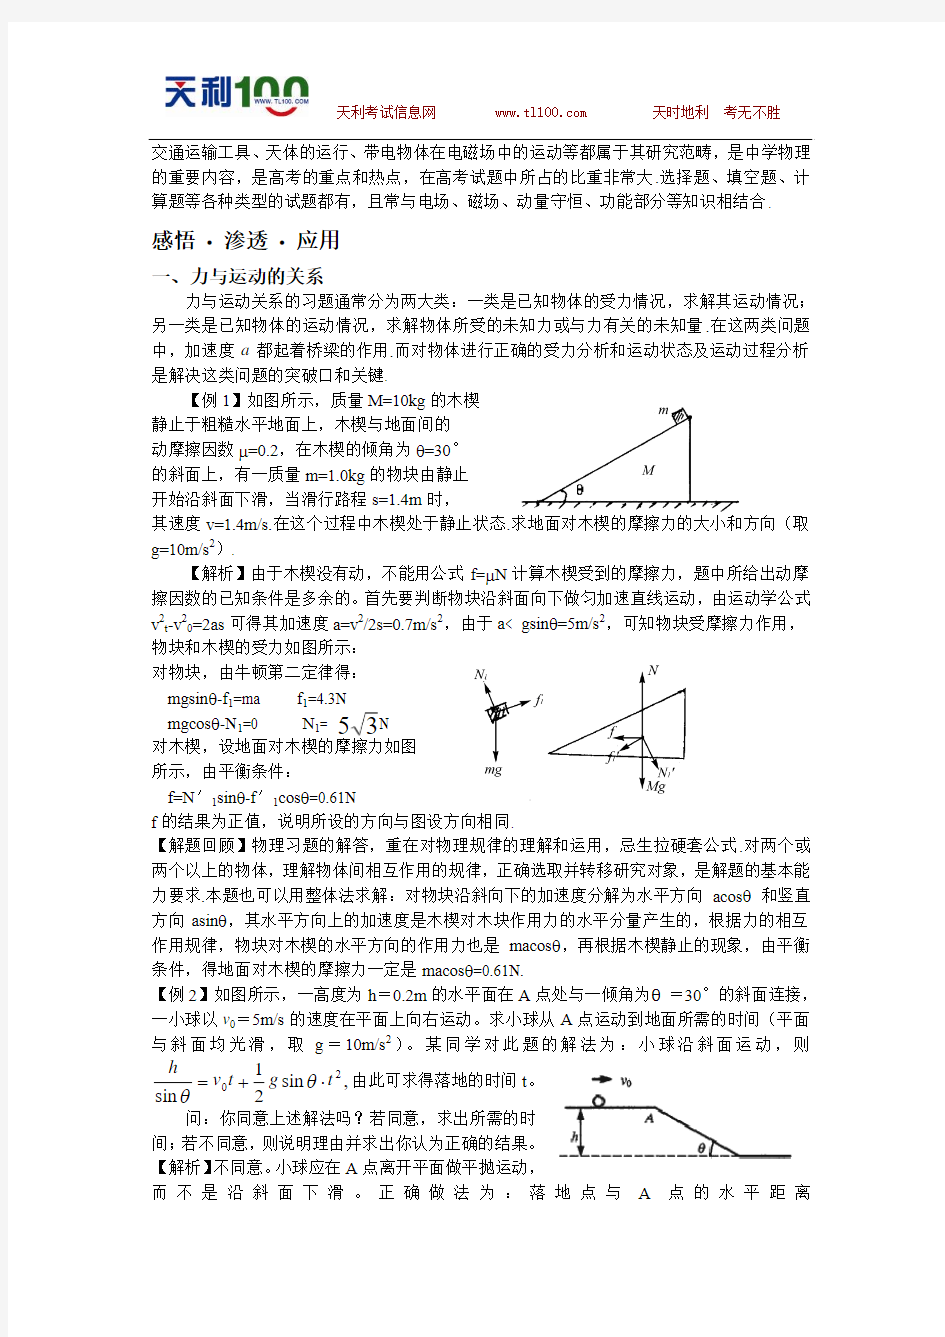 2009年高考物理经典题型及其解题基本思路专题辅导(二)